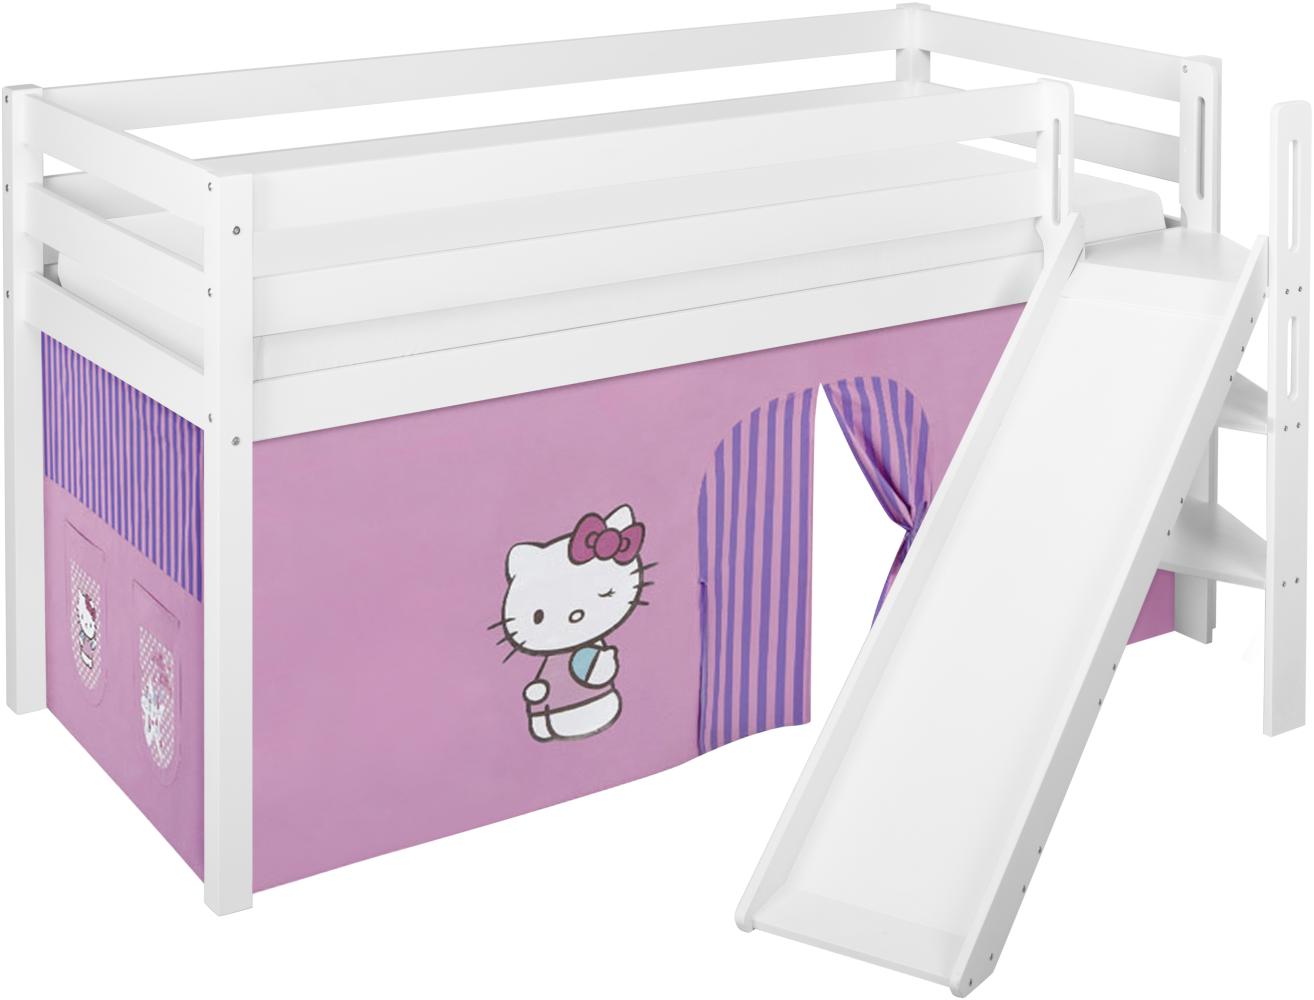 Lilokids 'Jelle' Spielbett 90 x 190 cm, Hello Kitty Lila, Kiefer massiv, mit schräger Rutsche und Vorhang Bild 1